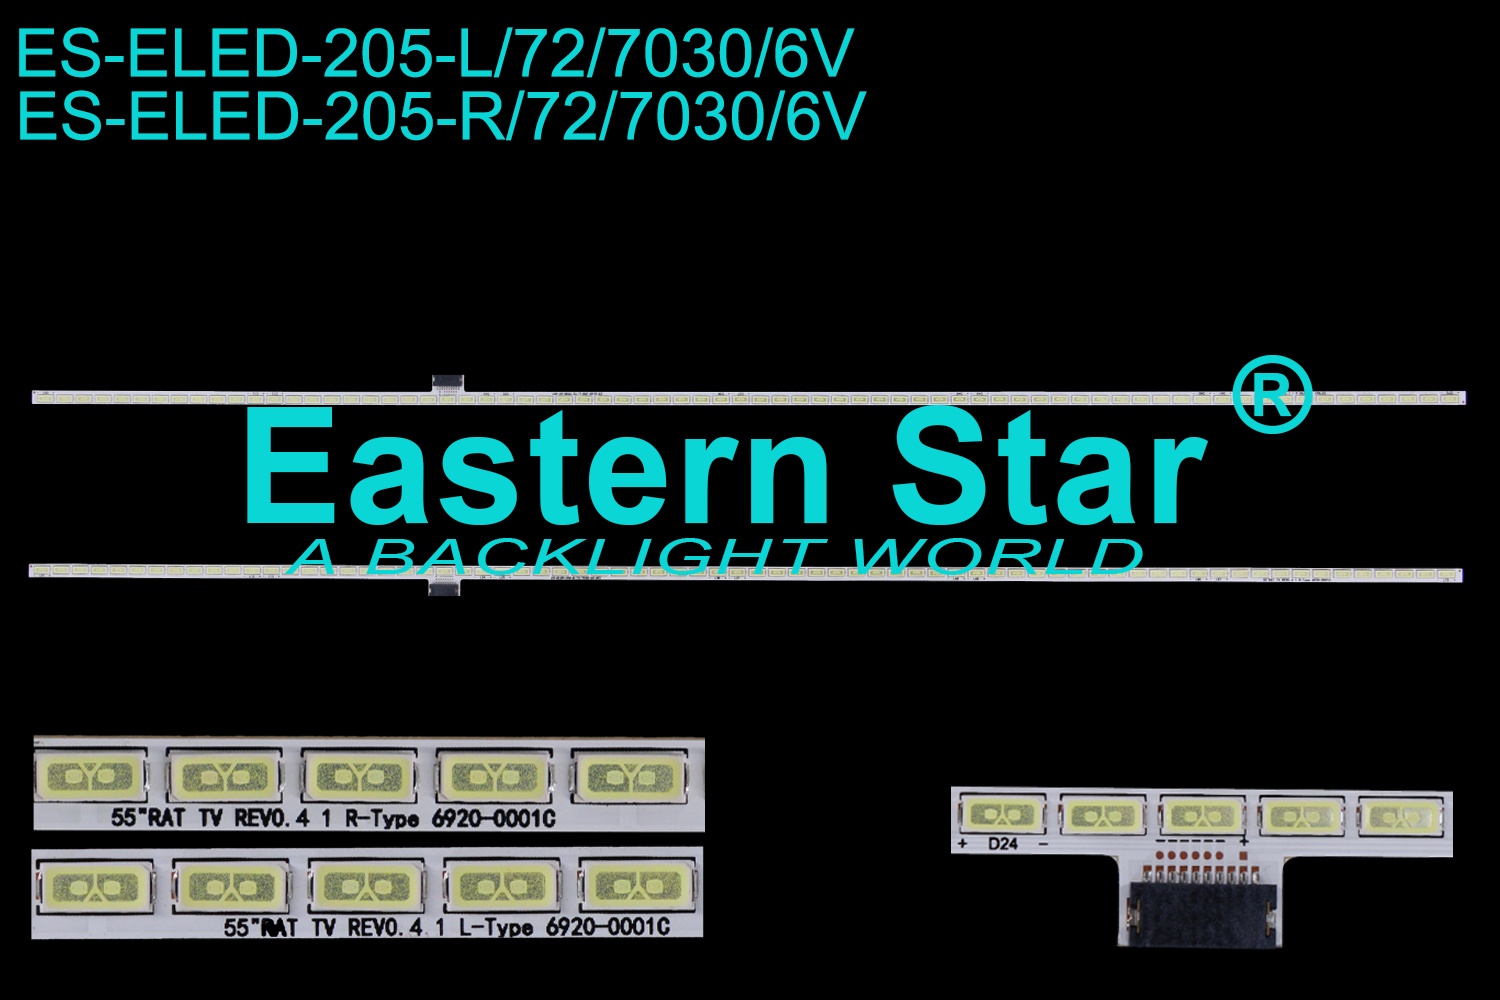 ES-ELED-205 ELED/EDGE TV backlight 55'' use for Lg L:55"ART TV REV0.4 1 L-Type 6920L-0001C  R:55"ART TV REV0.4 1 R-Type 6920L-0001C (2)